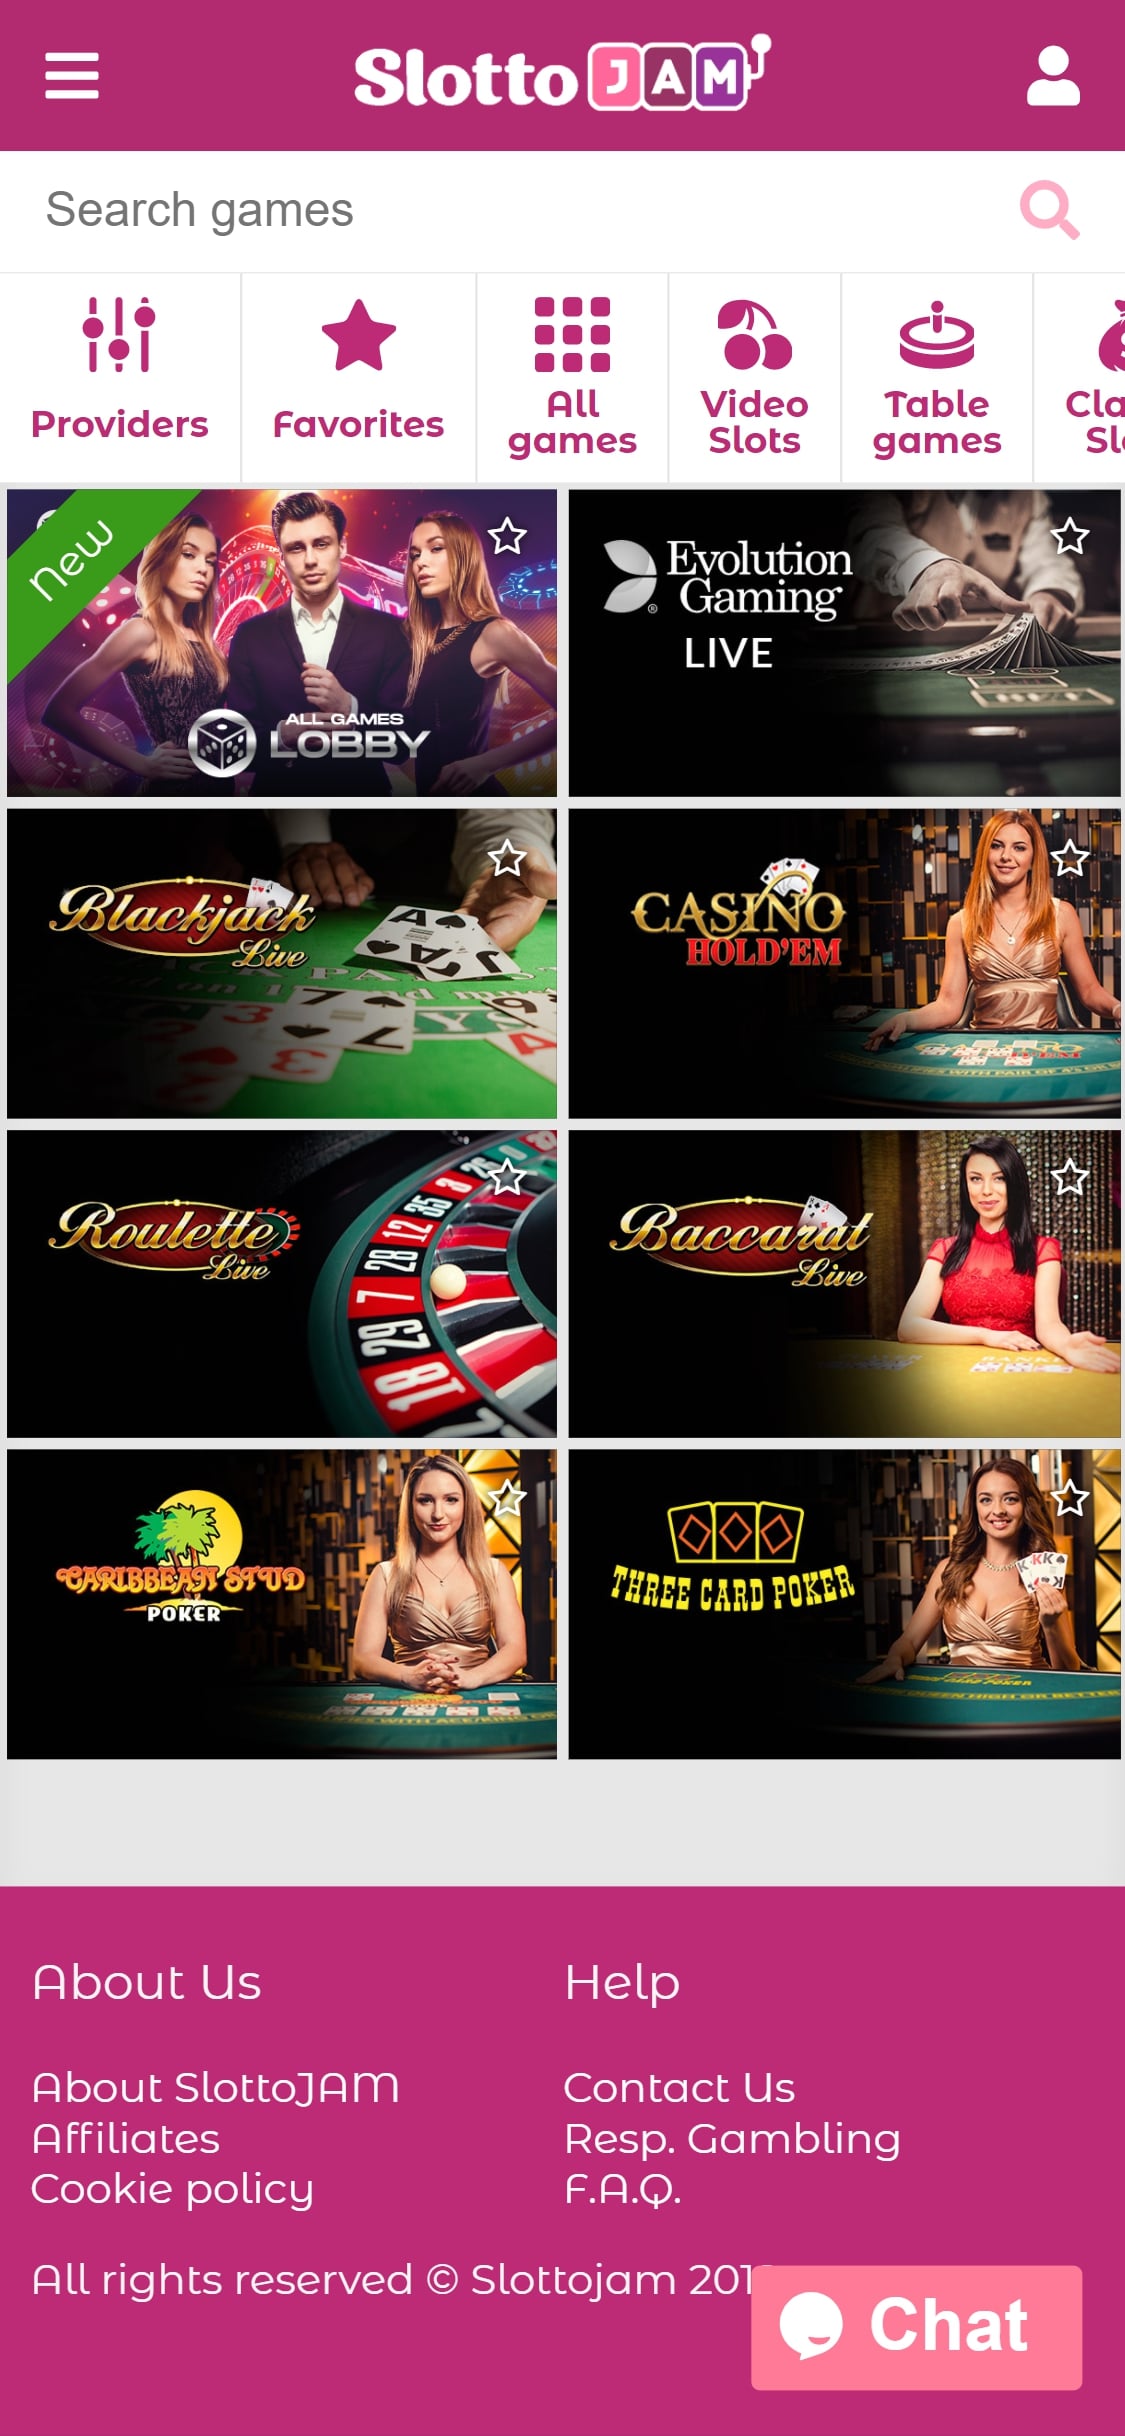 SlottoJAM Casino Mobile Live Dealer Games Review